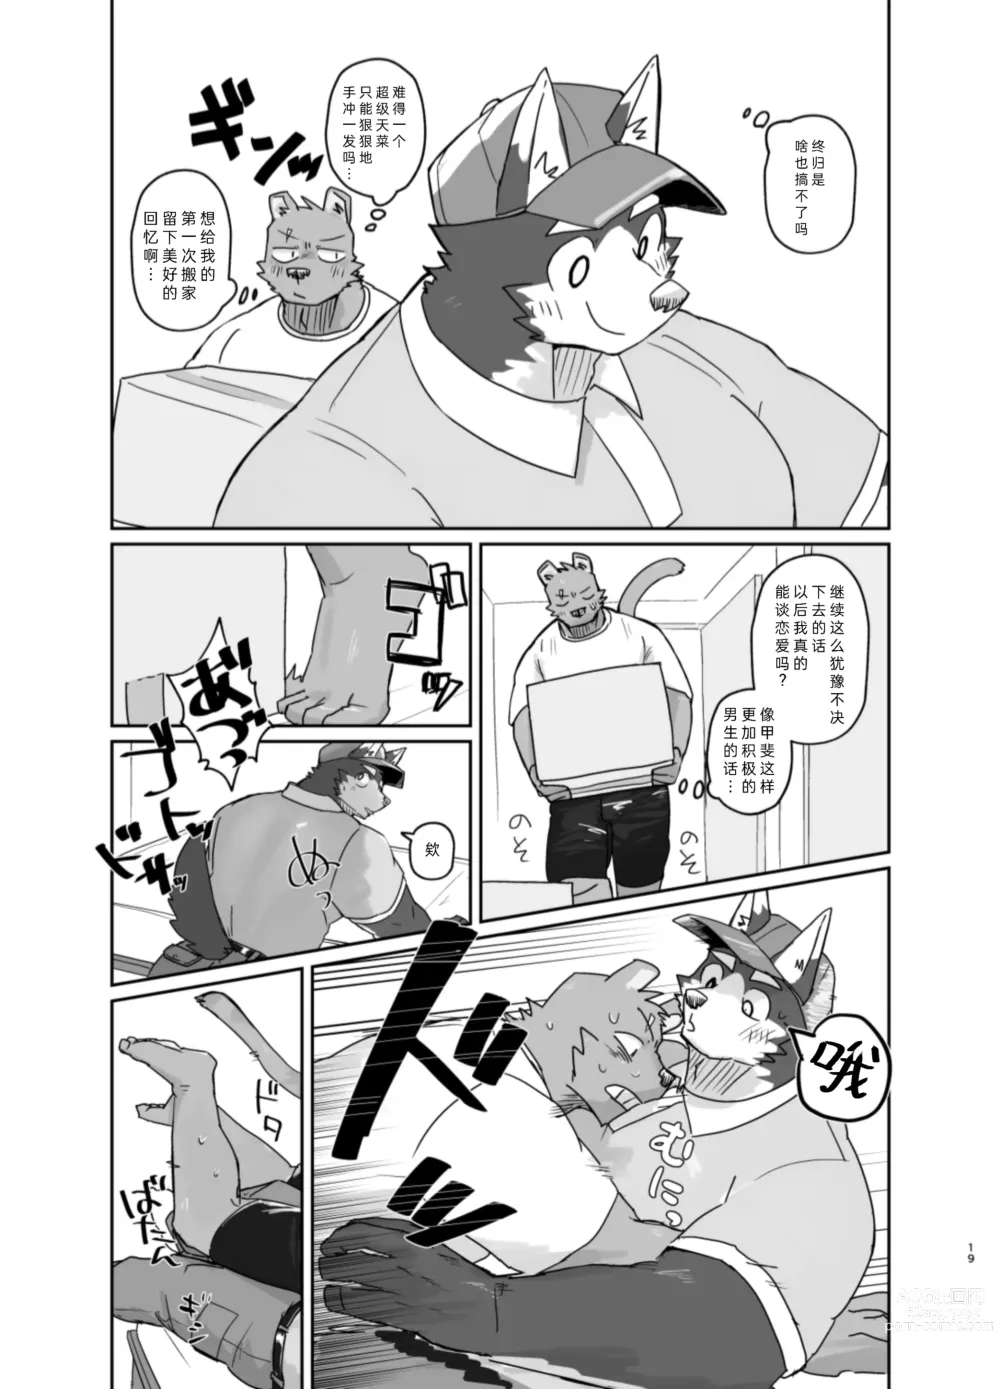 Page 19 of doujinshi 搬家的十分钟服务